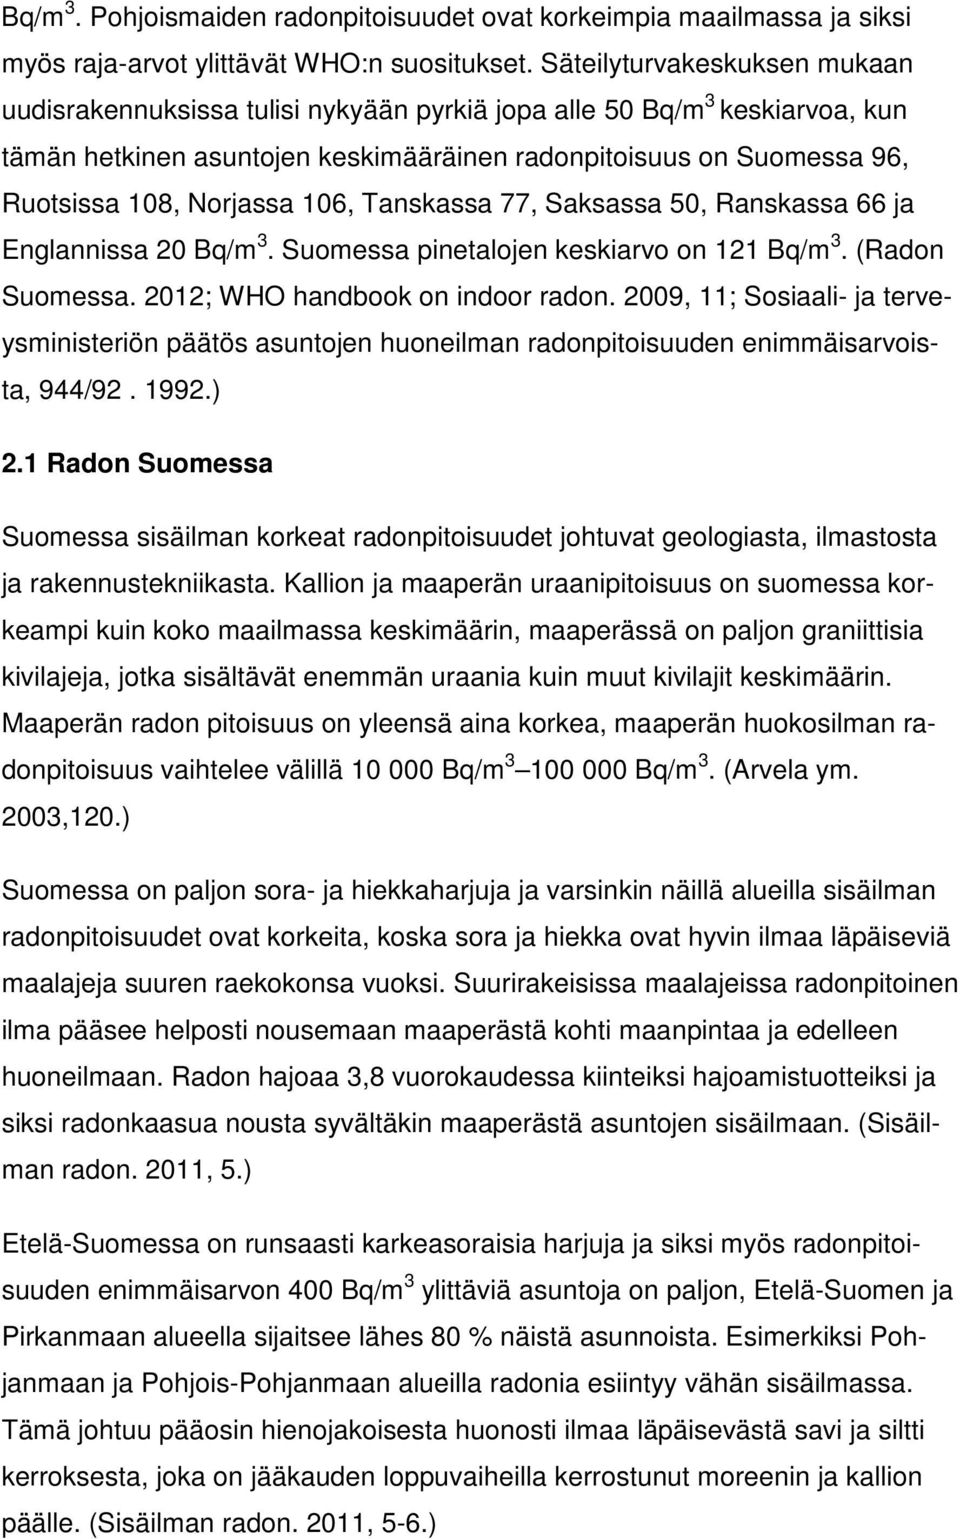 Norjassa 106, Tanskassa 77, Saksassa 50, Ranskassa 66 ja Englannissa 20 Bq/m 3. Suomessa pinetalojen keskiarvo on 121 Bq/m 3. (Radon Suomessa. 2012; WHO handbook on indoor radon.